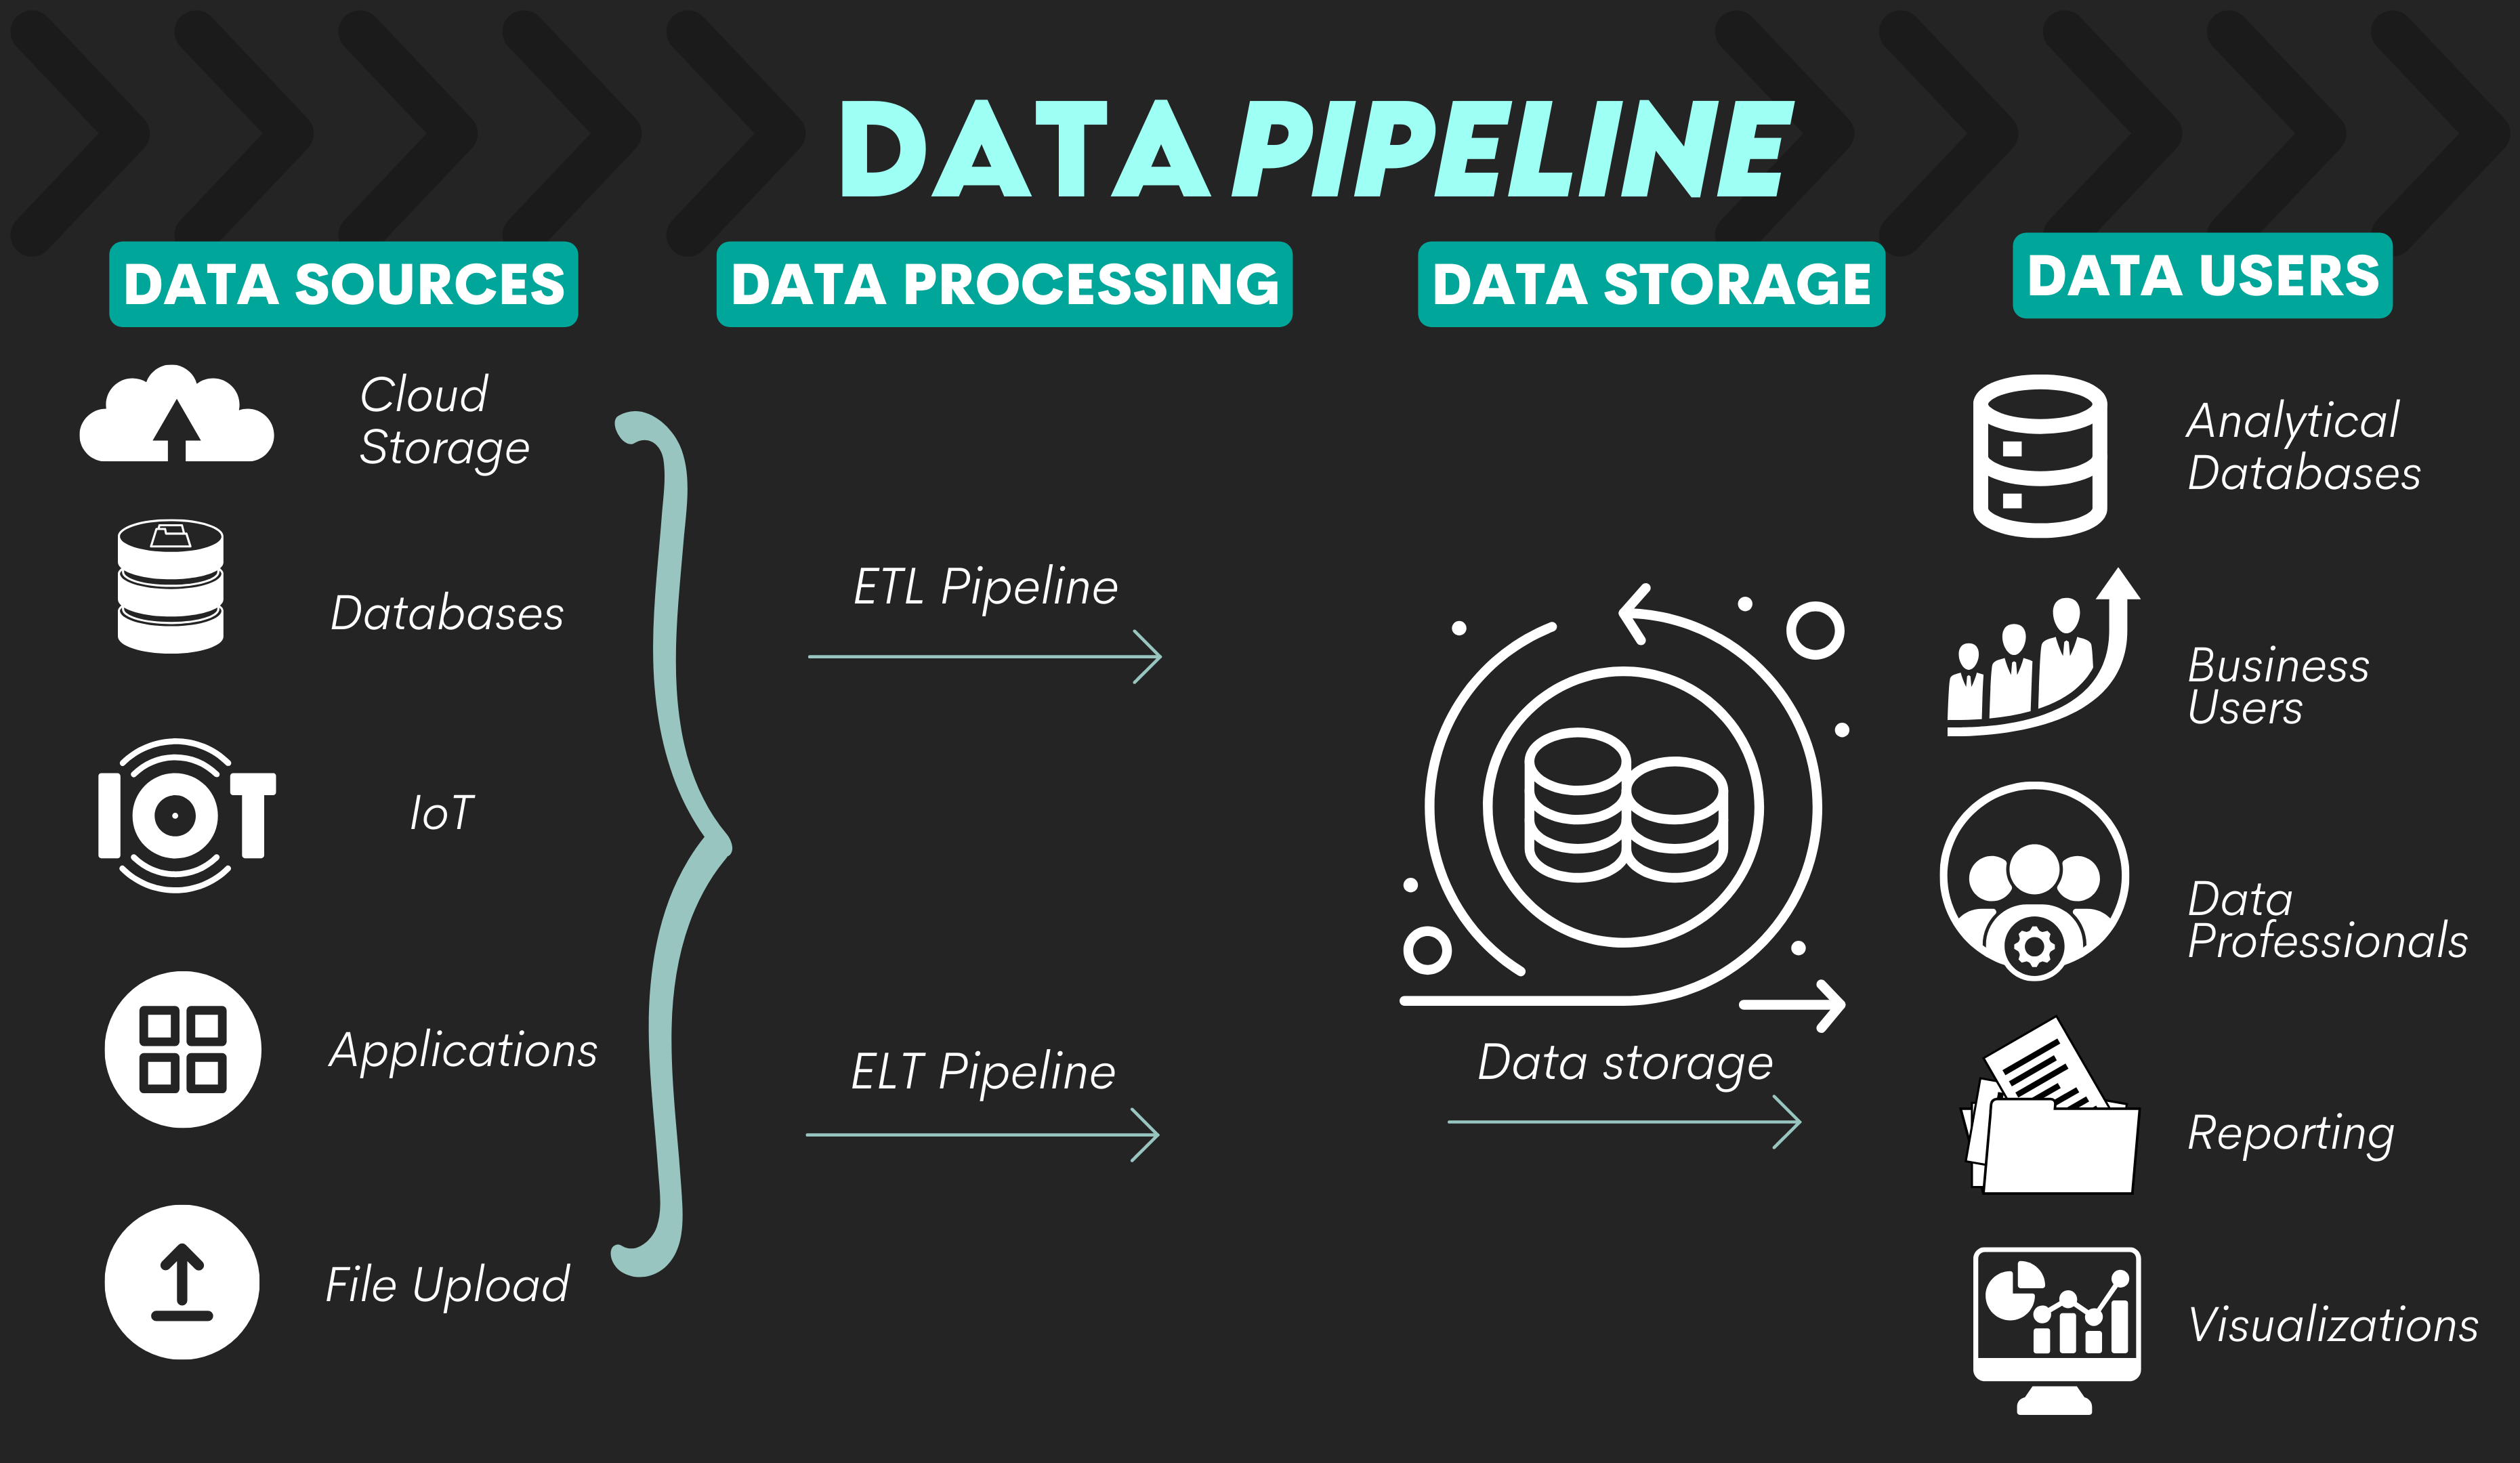  Data Pipeline